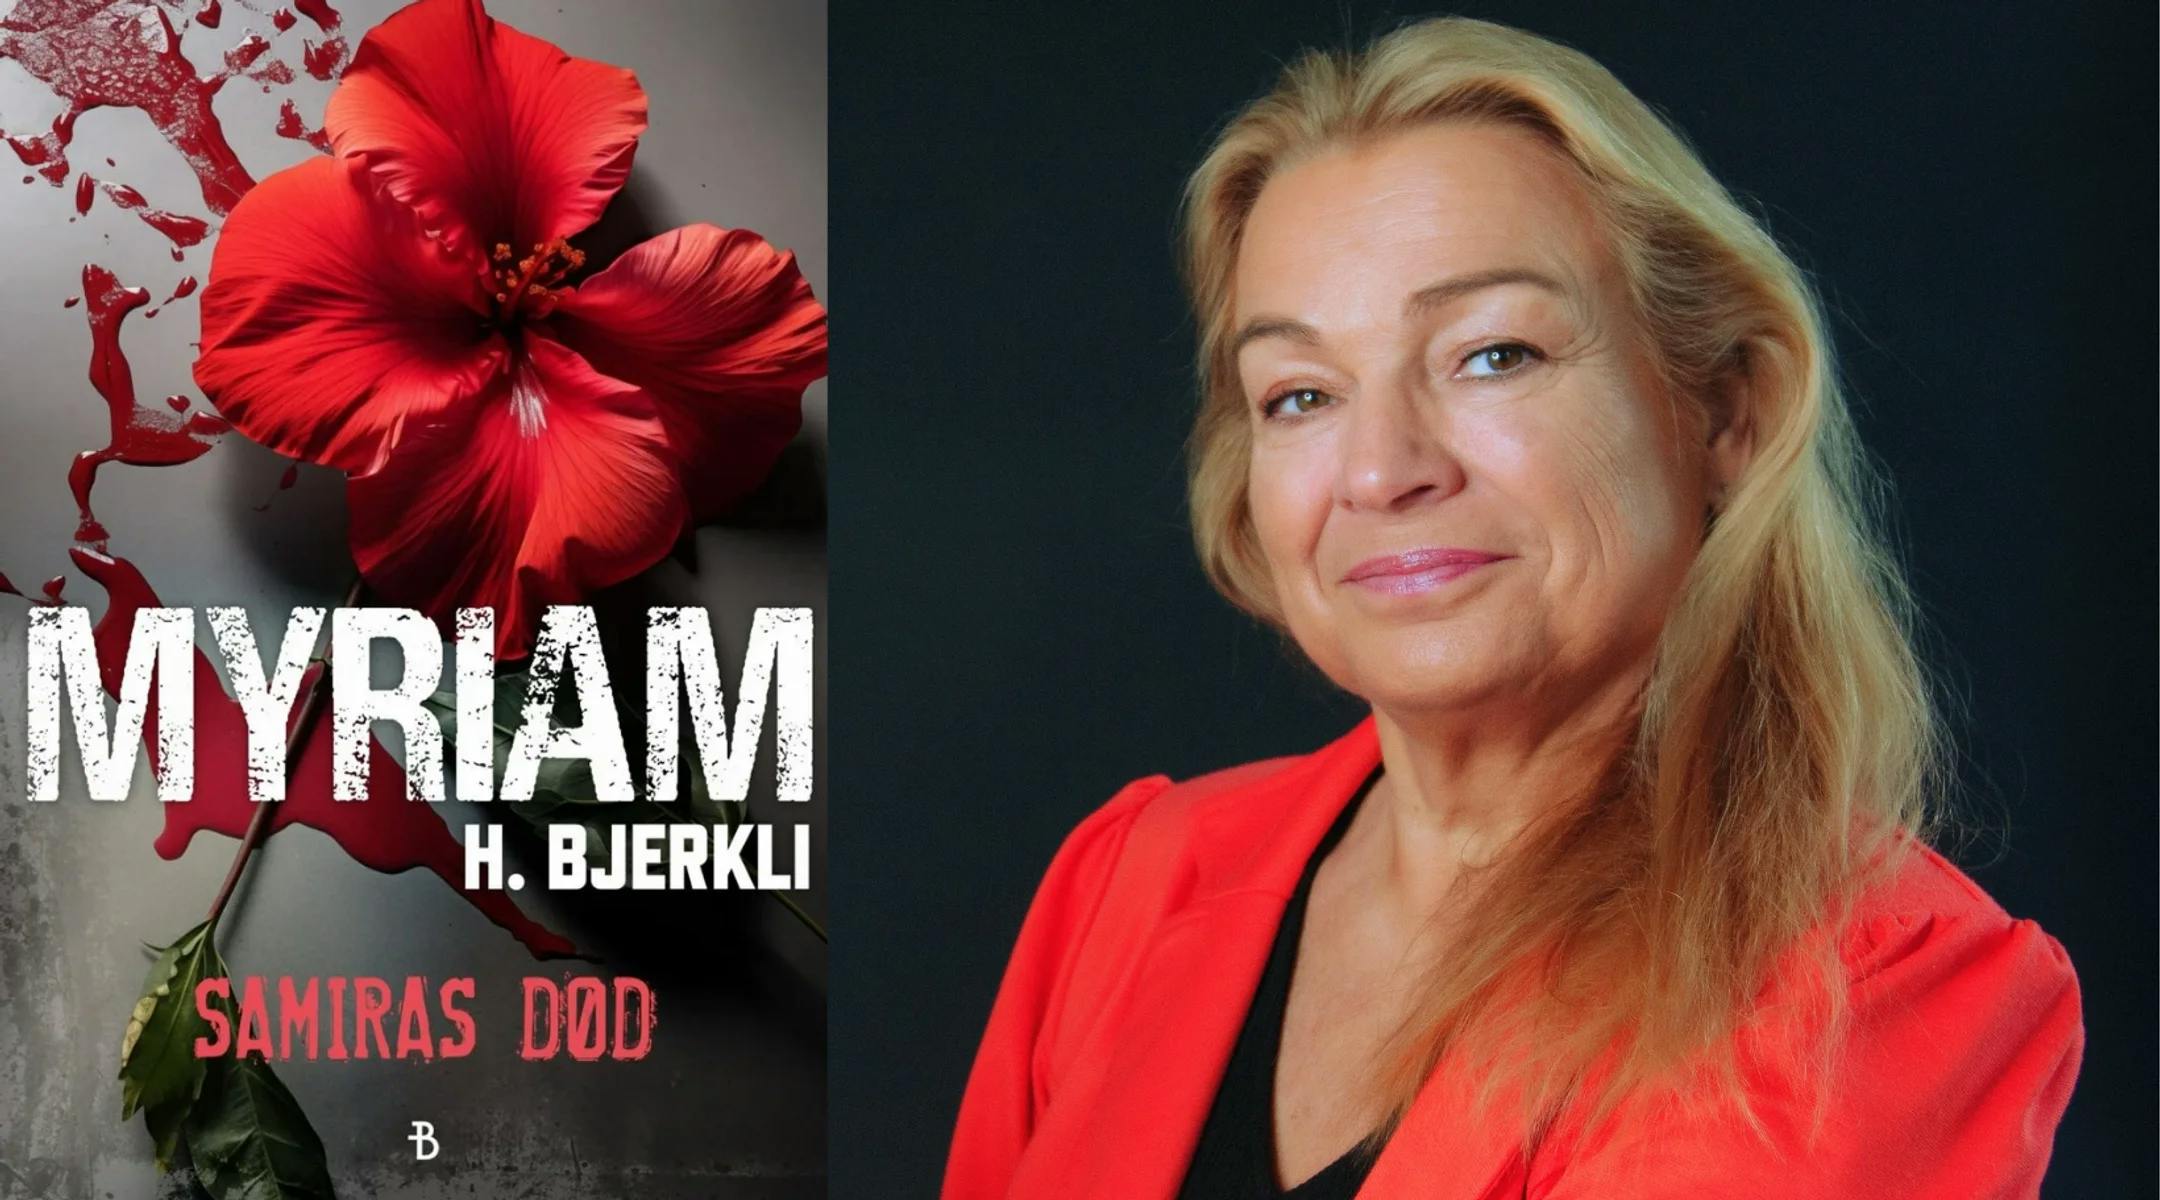 Bokomslag Samiras død: En rød blomst og blod. Fotografi av Bjerkli i en rød jakke.